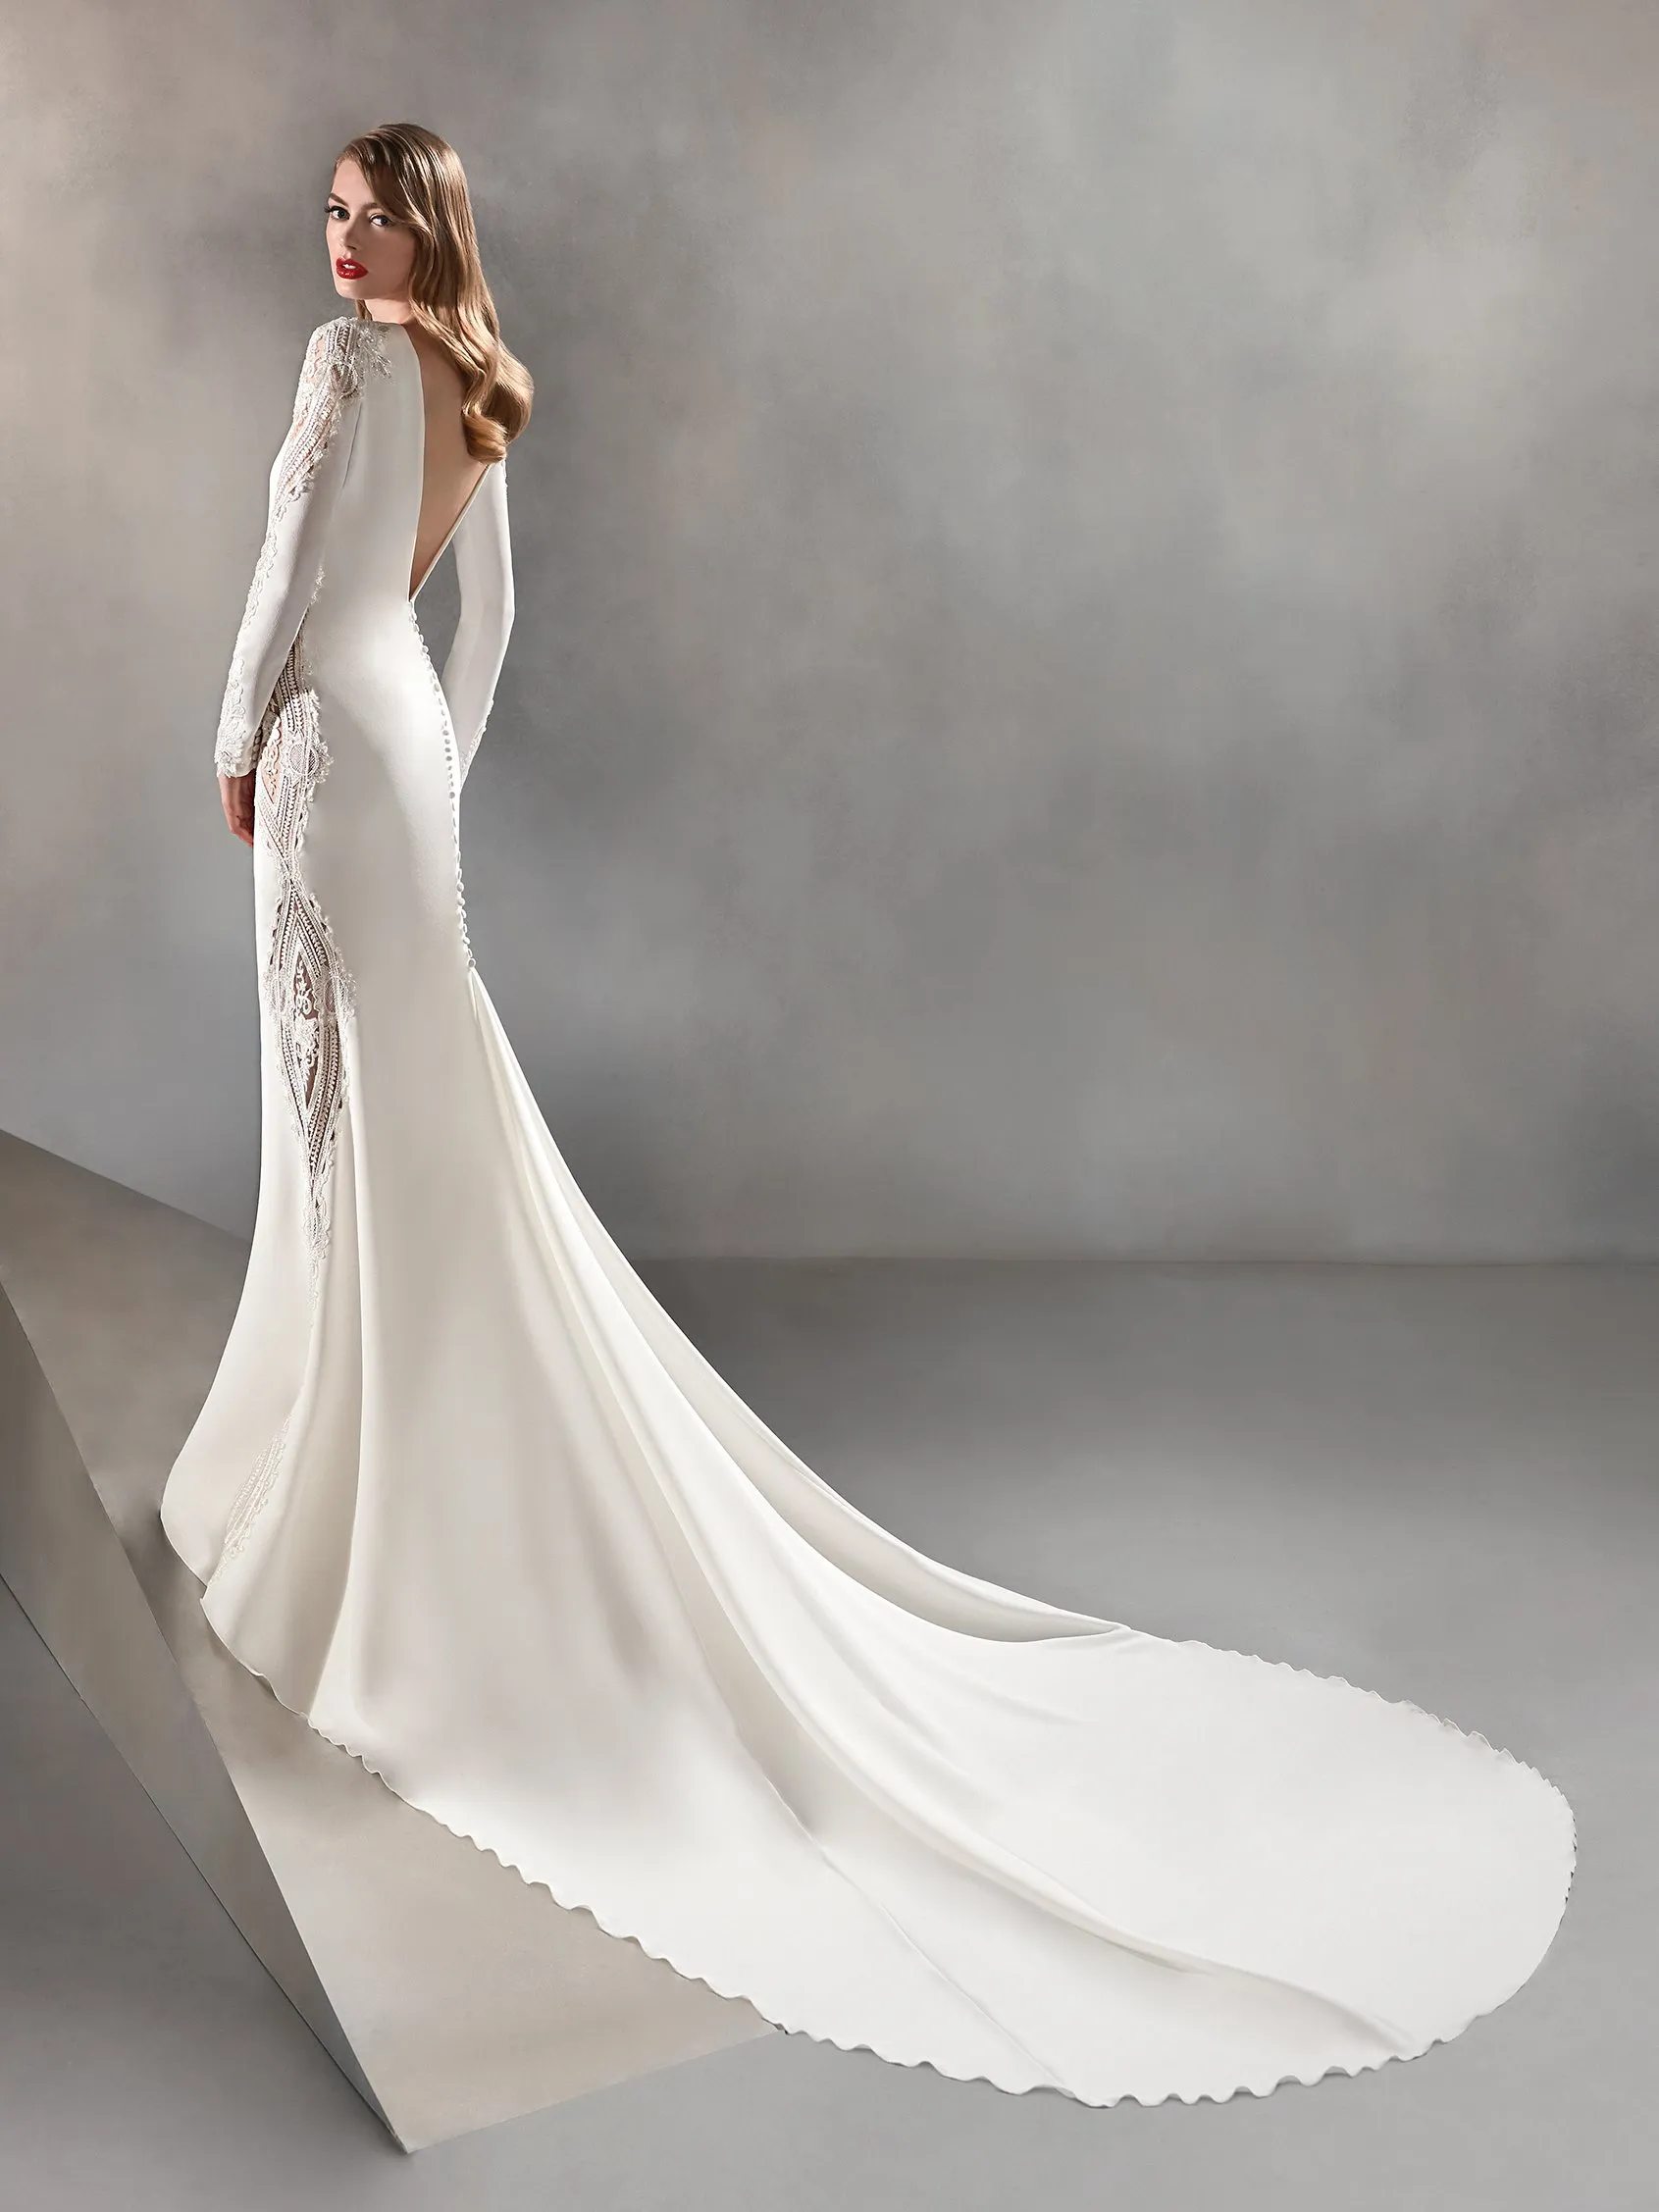 Condesa esküvői ruha - Pronovias Atelier